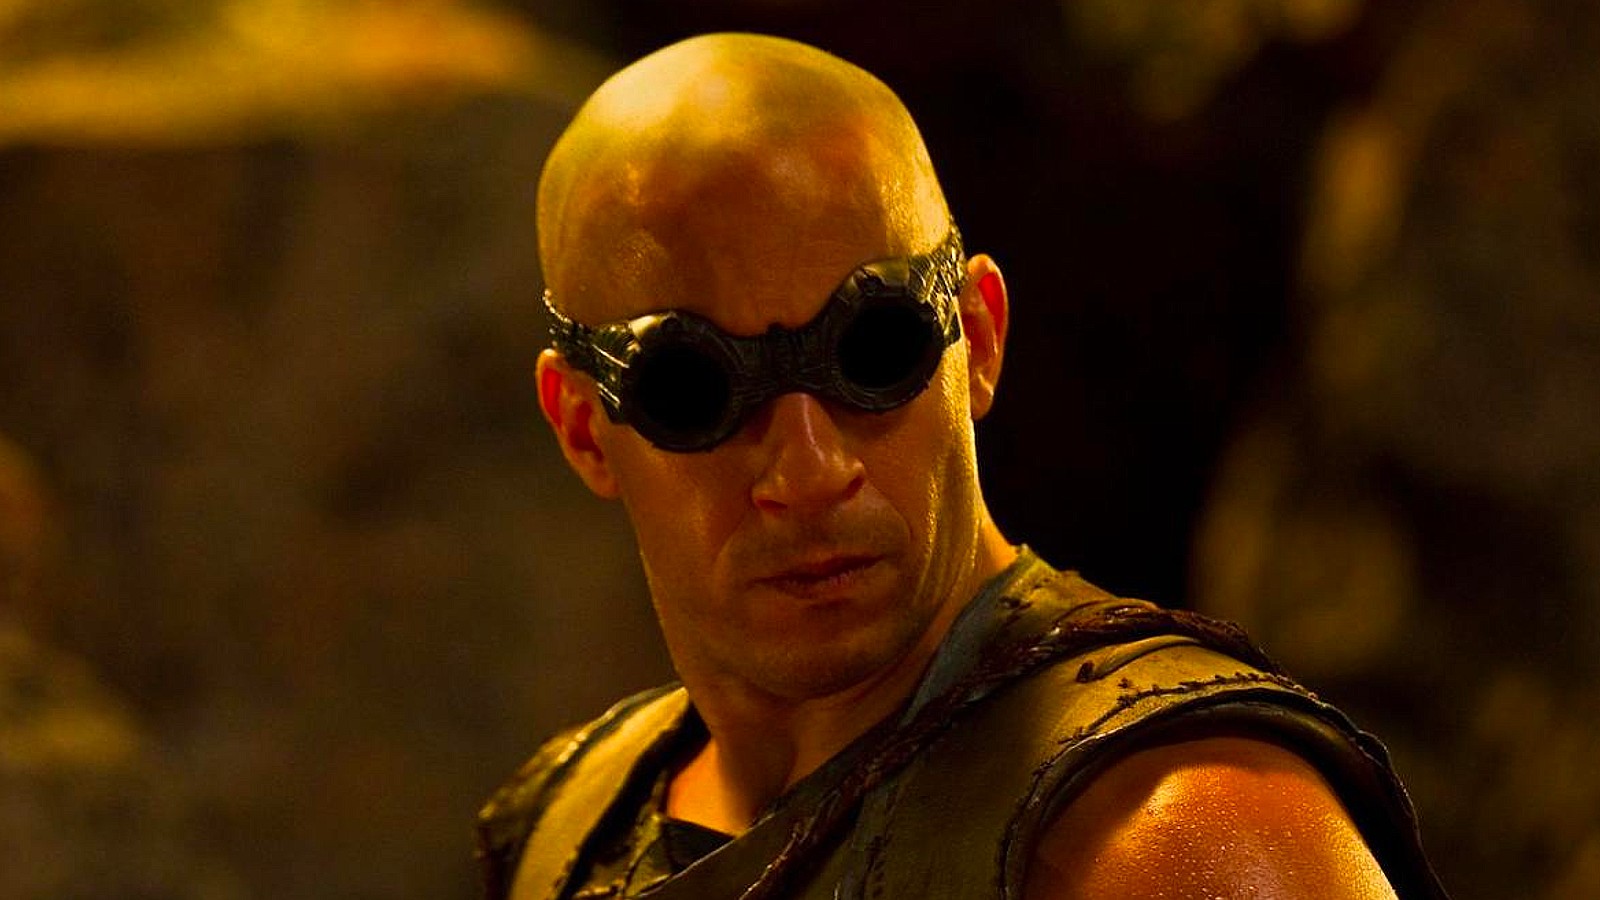 فين ديزل في دور Riddick في أفلام Riddick